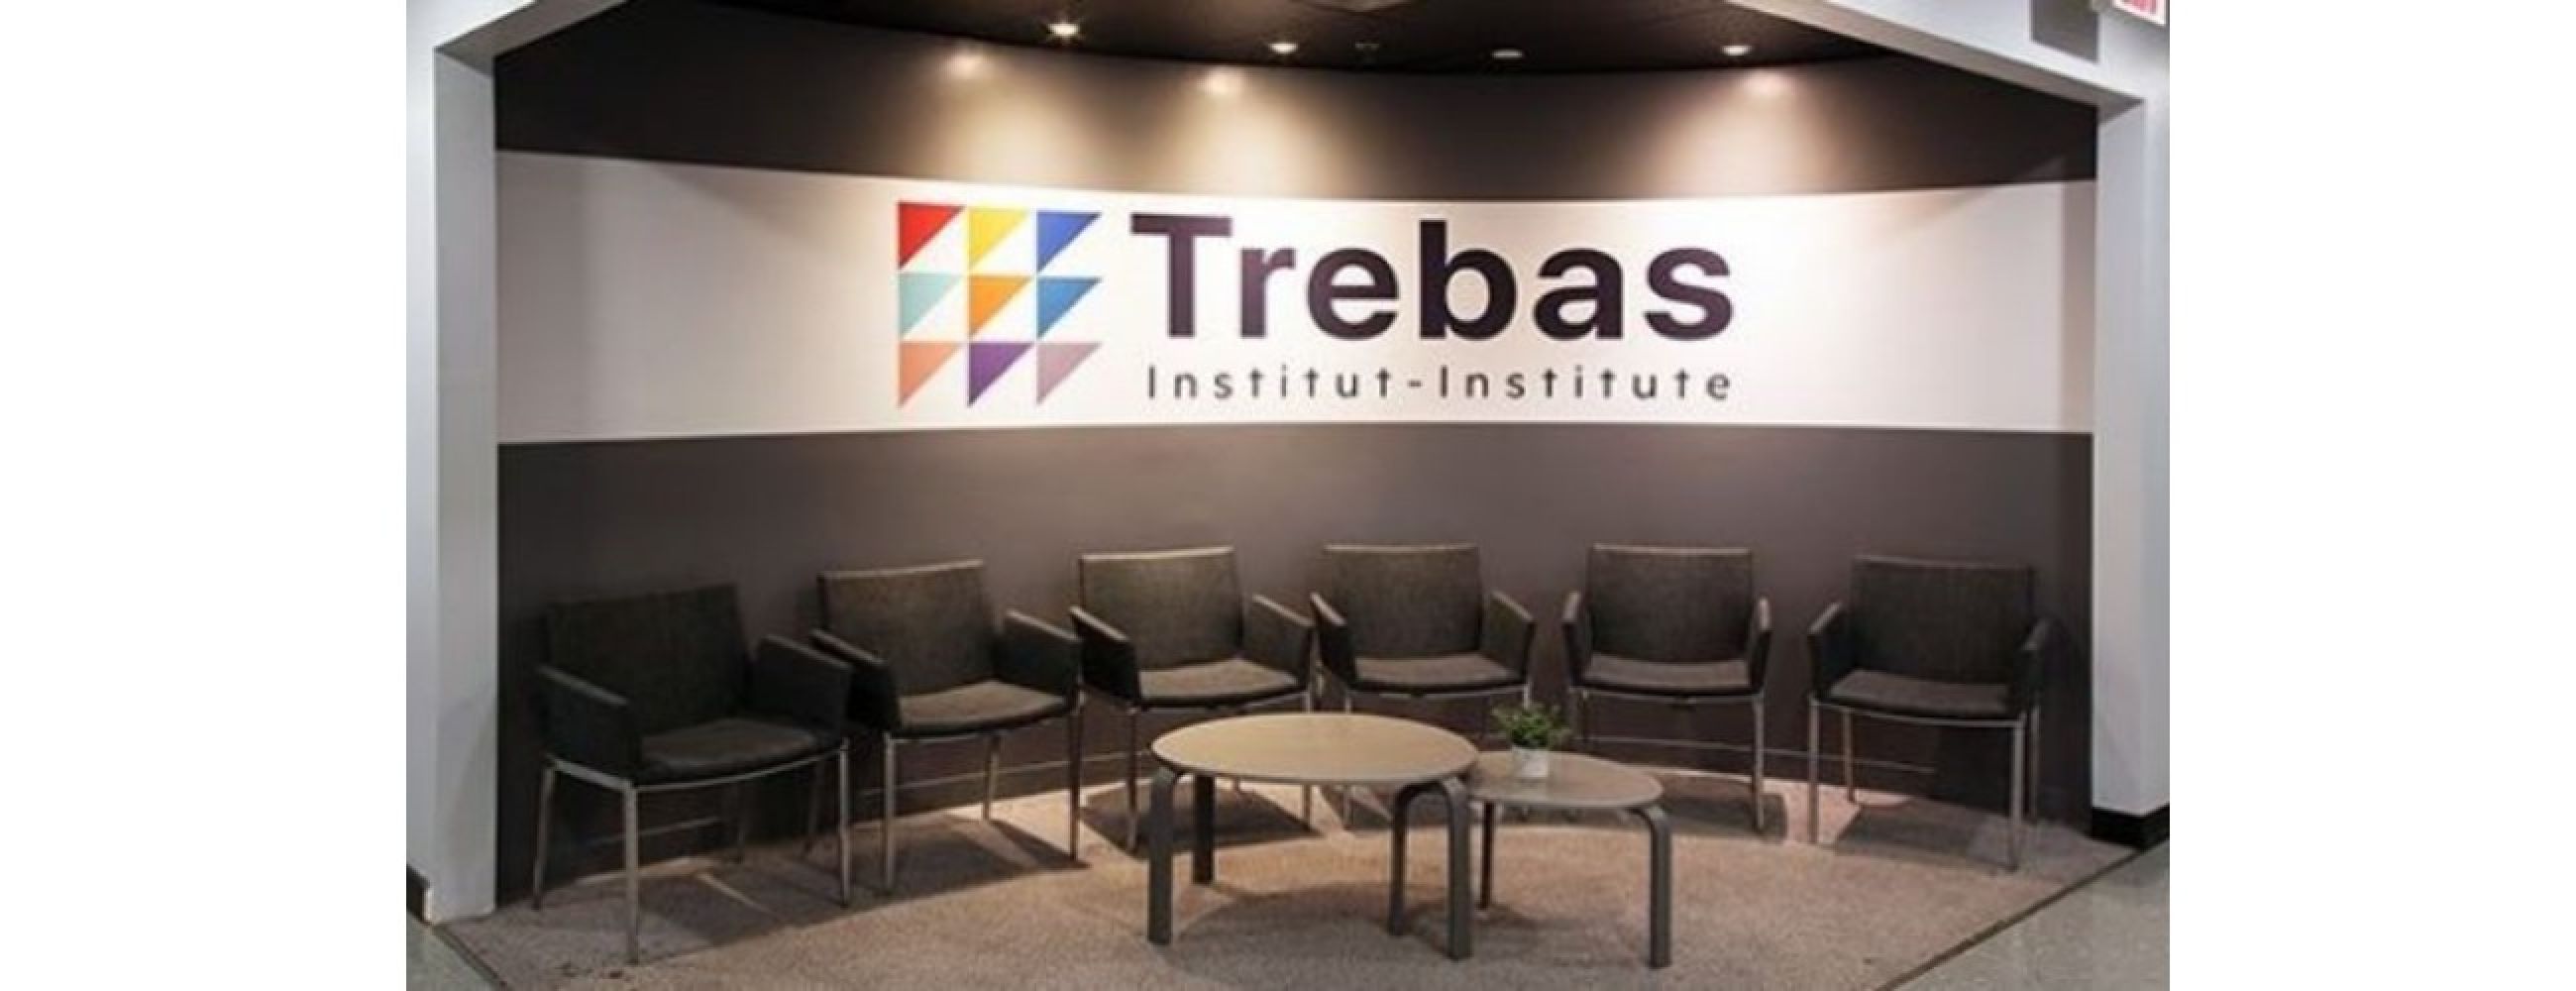 Trebas Institute